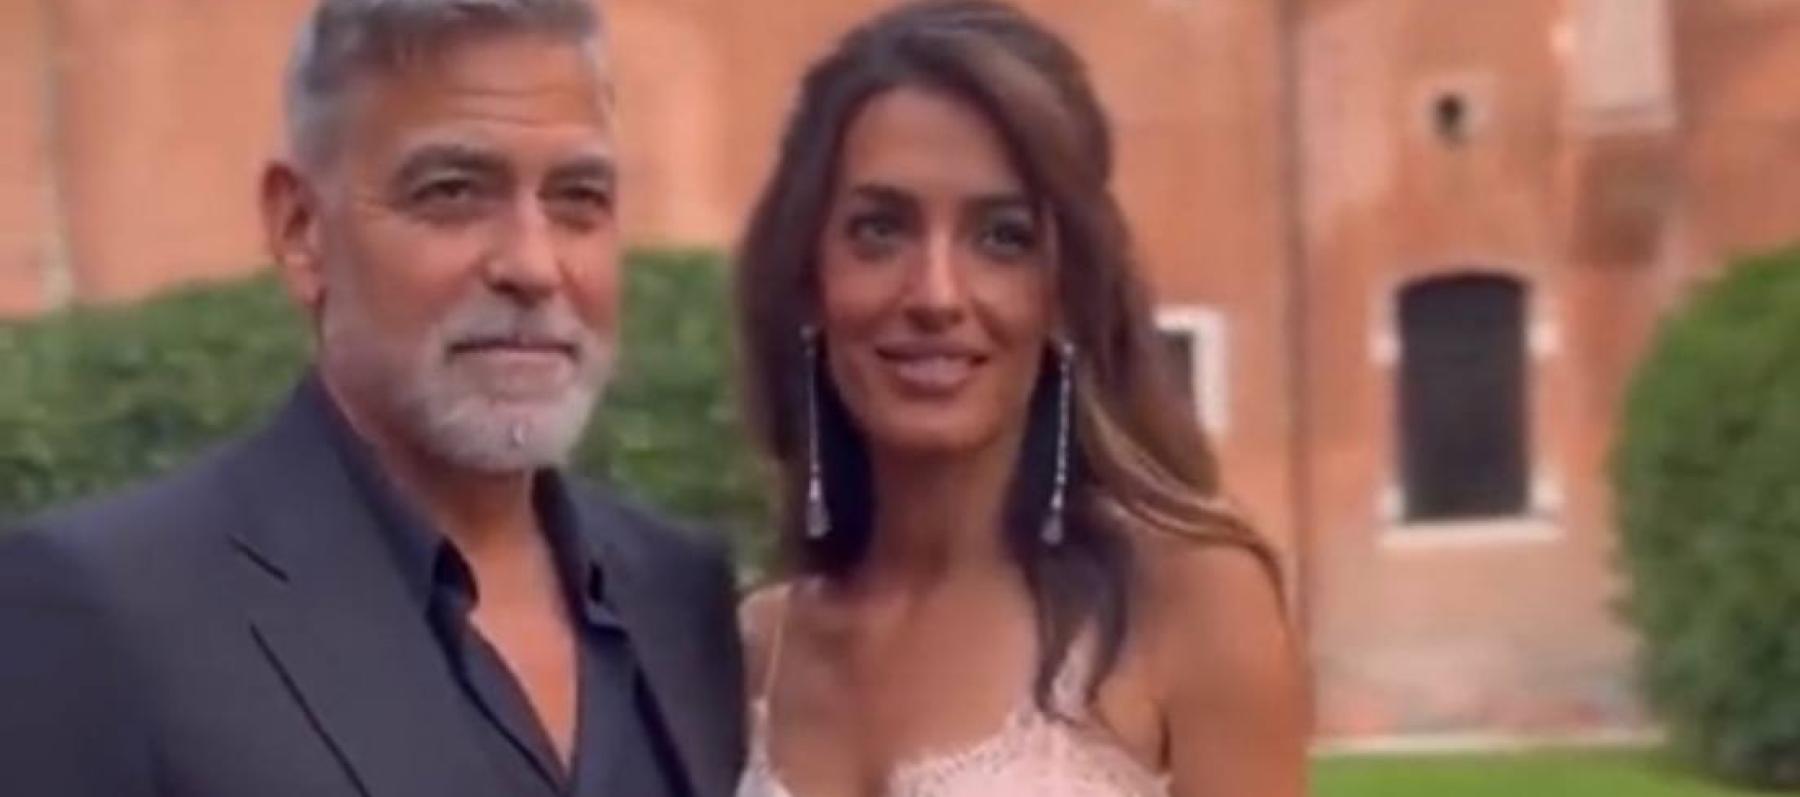 جورج كلوني وزوجته أمل علم الدين - صورة مأخوذة من فيديو